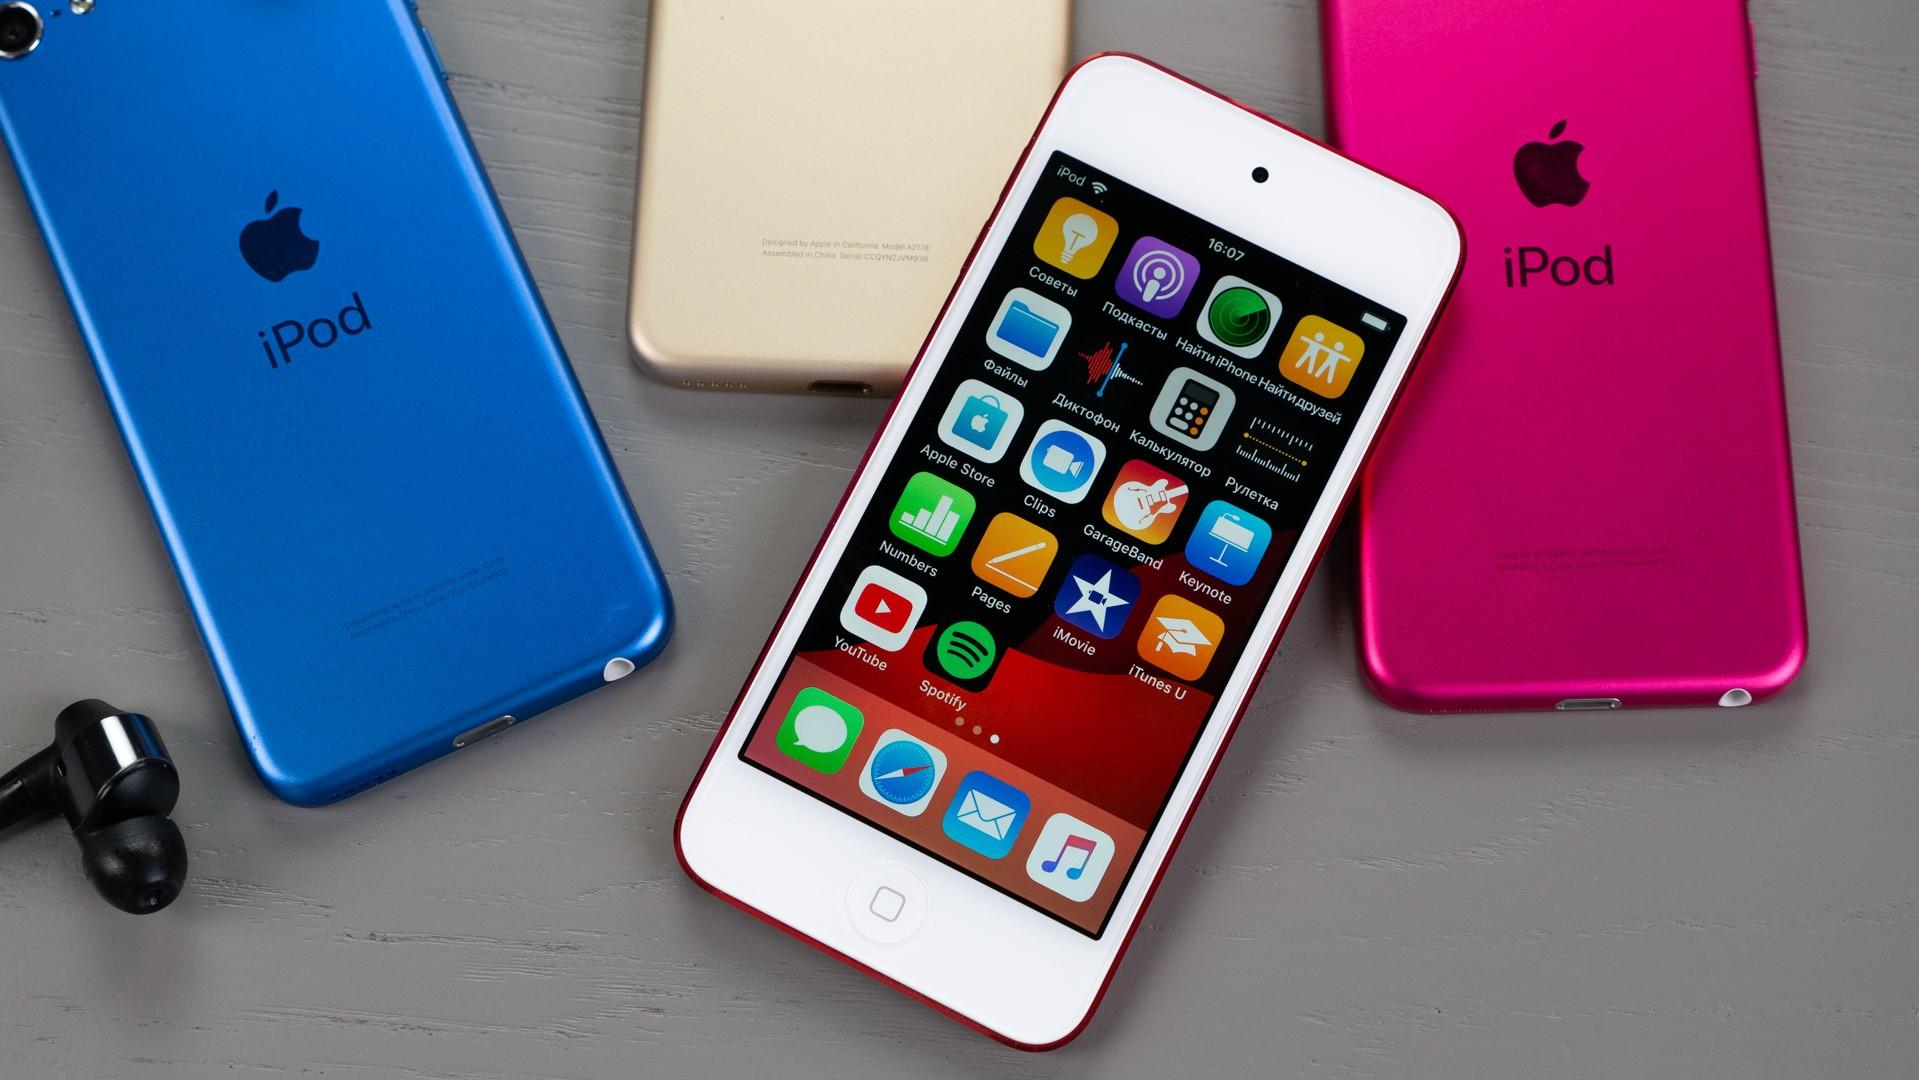 Пристрої Apple iPod touch швидко розкуповують після новини про припинення виробництва